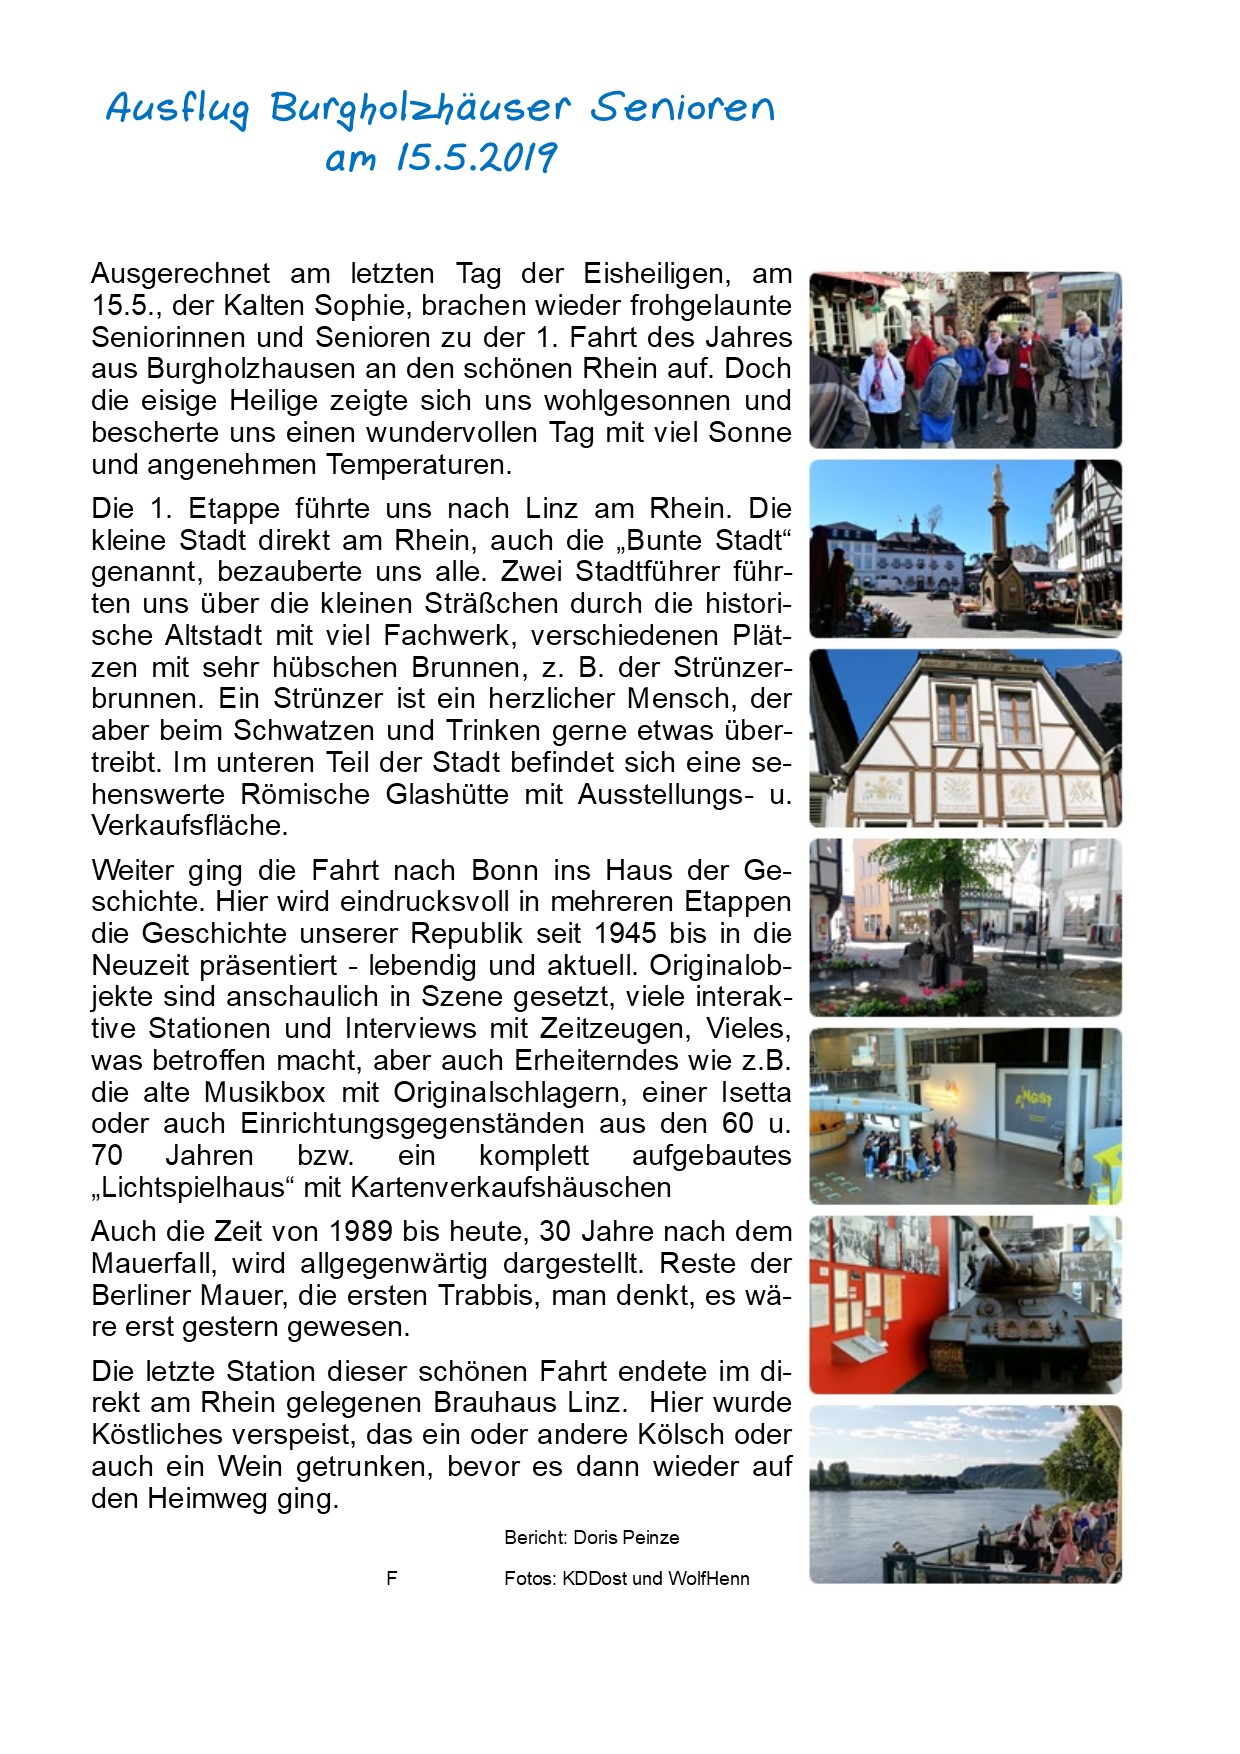 Ausflug der Burgholzhäuser Senioren nach Linz und Bonn